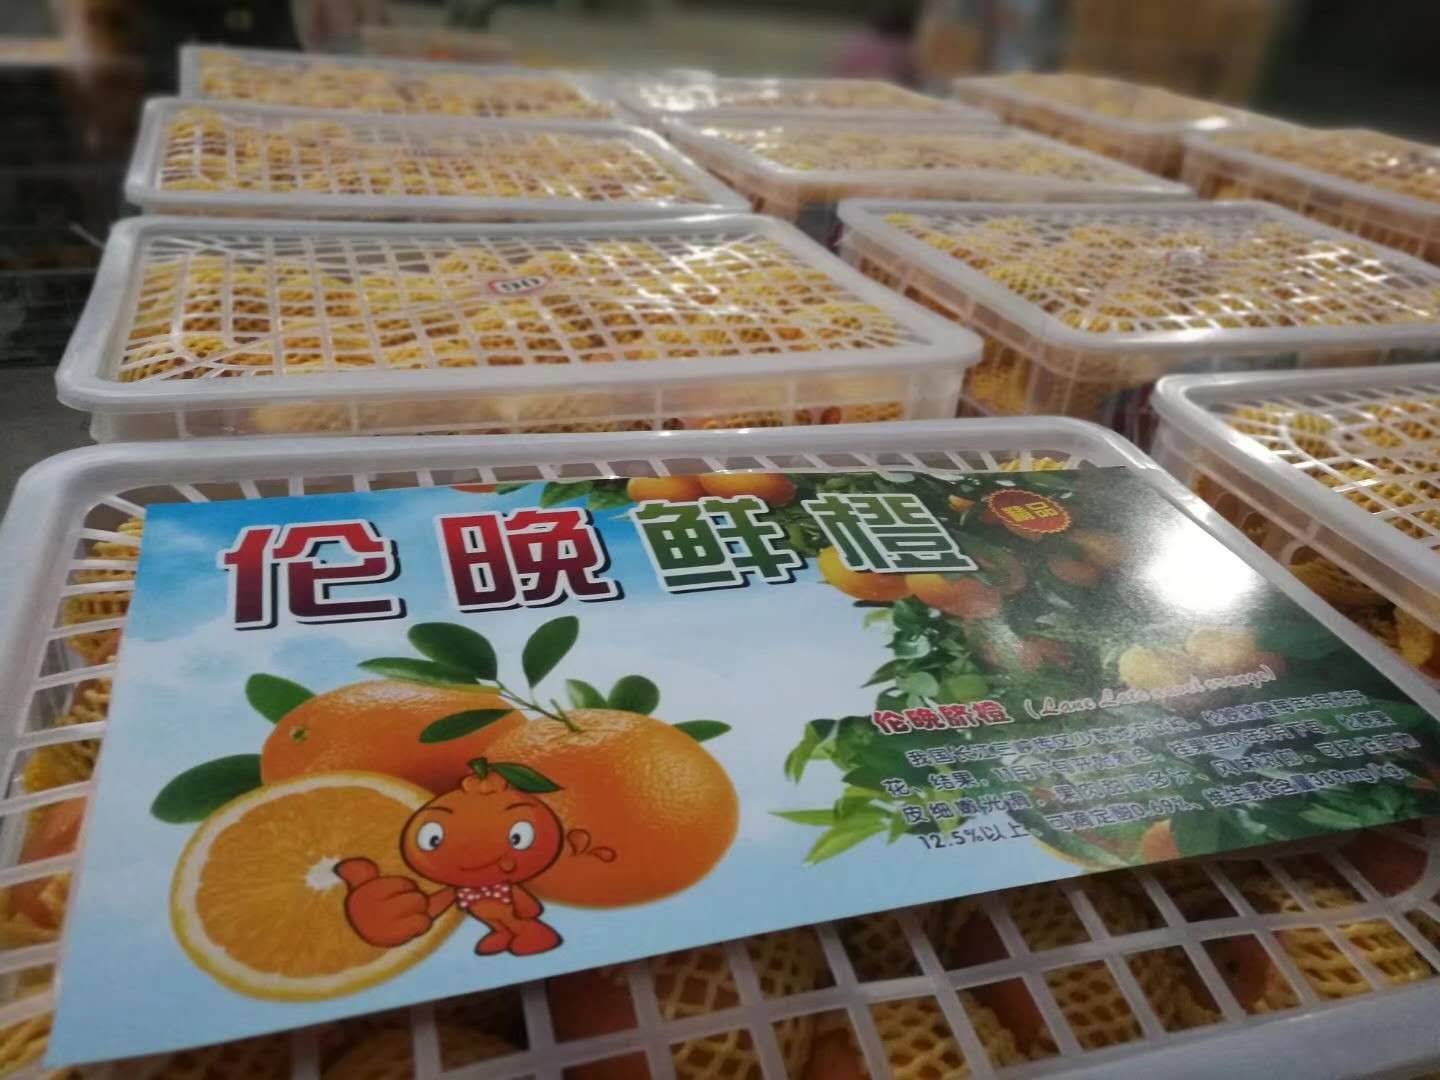 大量伦晚↖夏橙上市出售，欢迎与我联系！（13177075995微信同电）长期提供最优质脐橙！最低价出售伦晚夏橙等